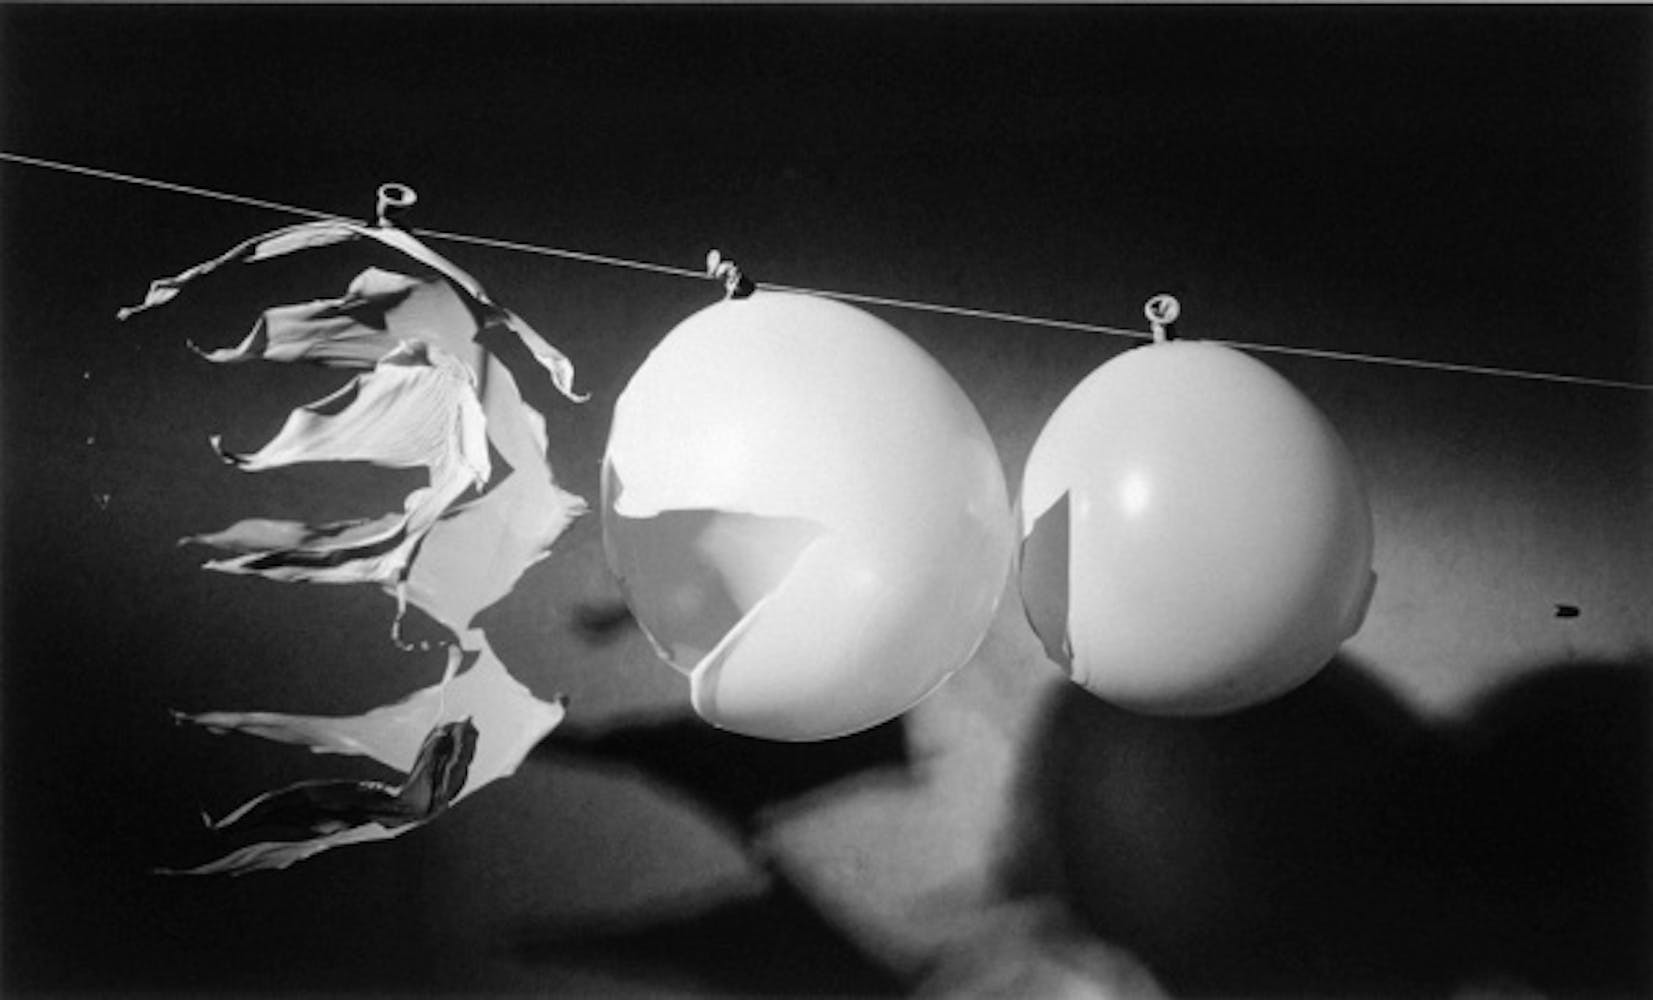 Harold Edgerton, Bullet through Balloons, 1959